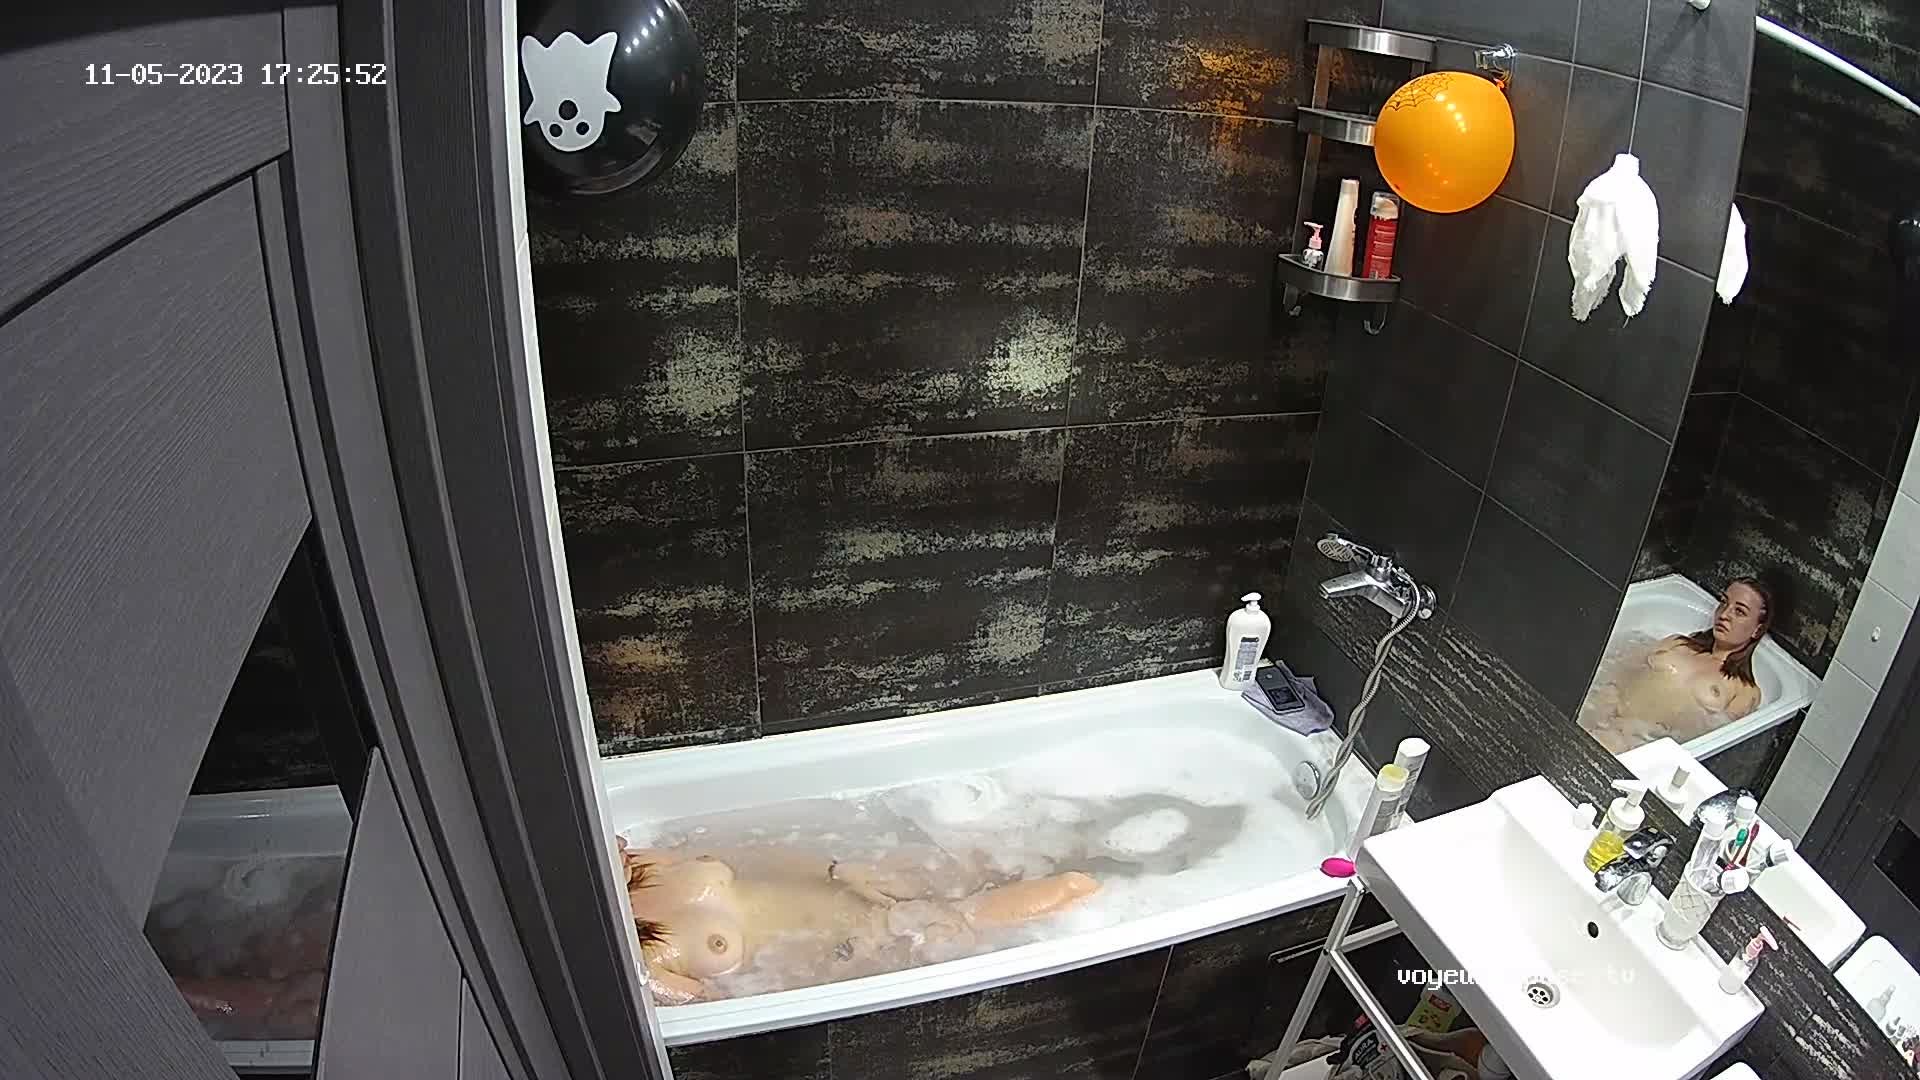 Fox bath, Nov-05-2023